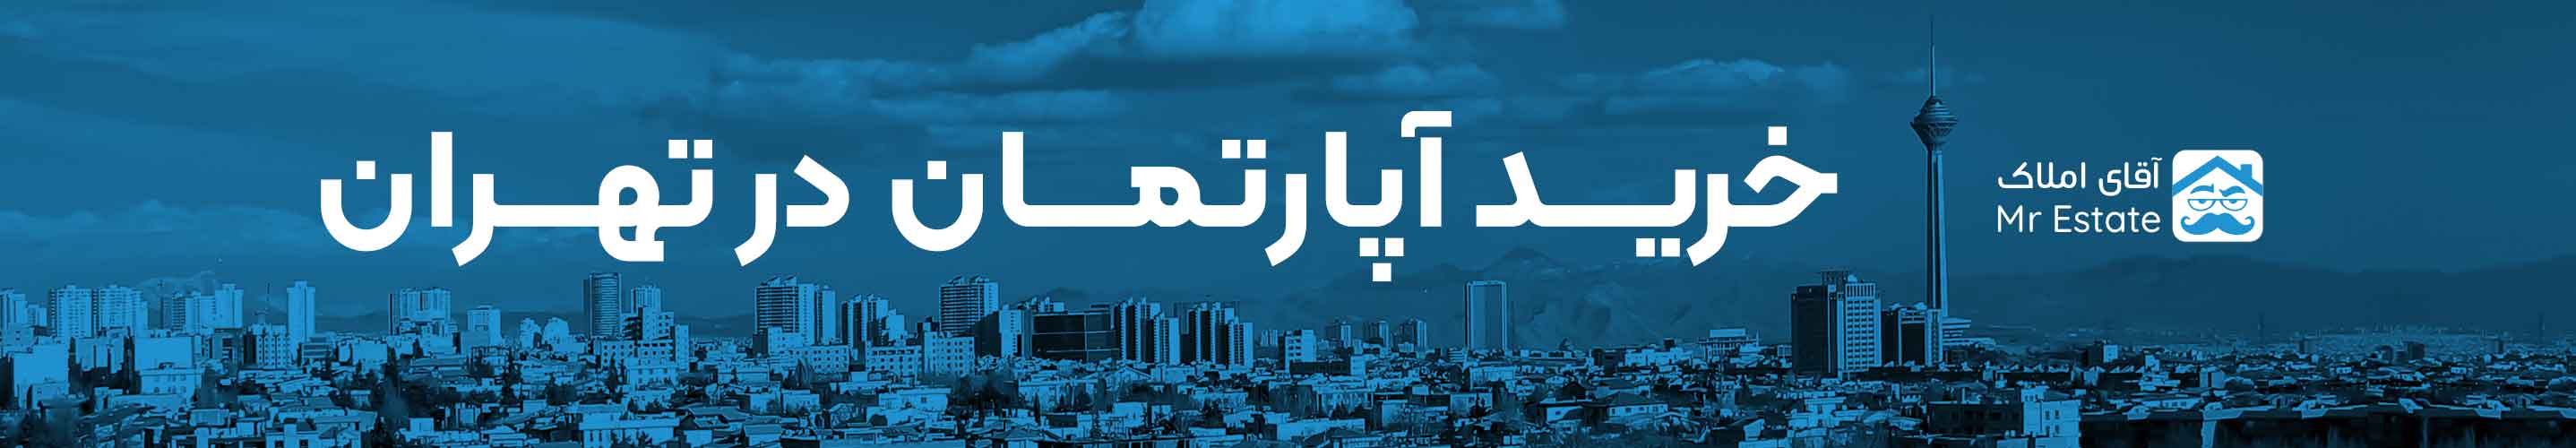 خرید خانه و آپارتمان در تهران